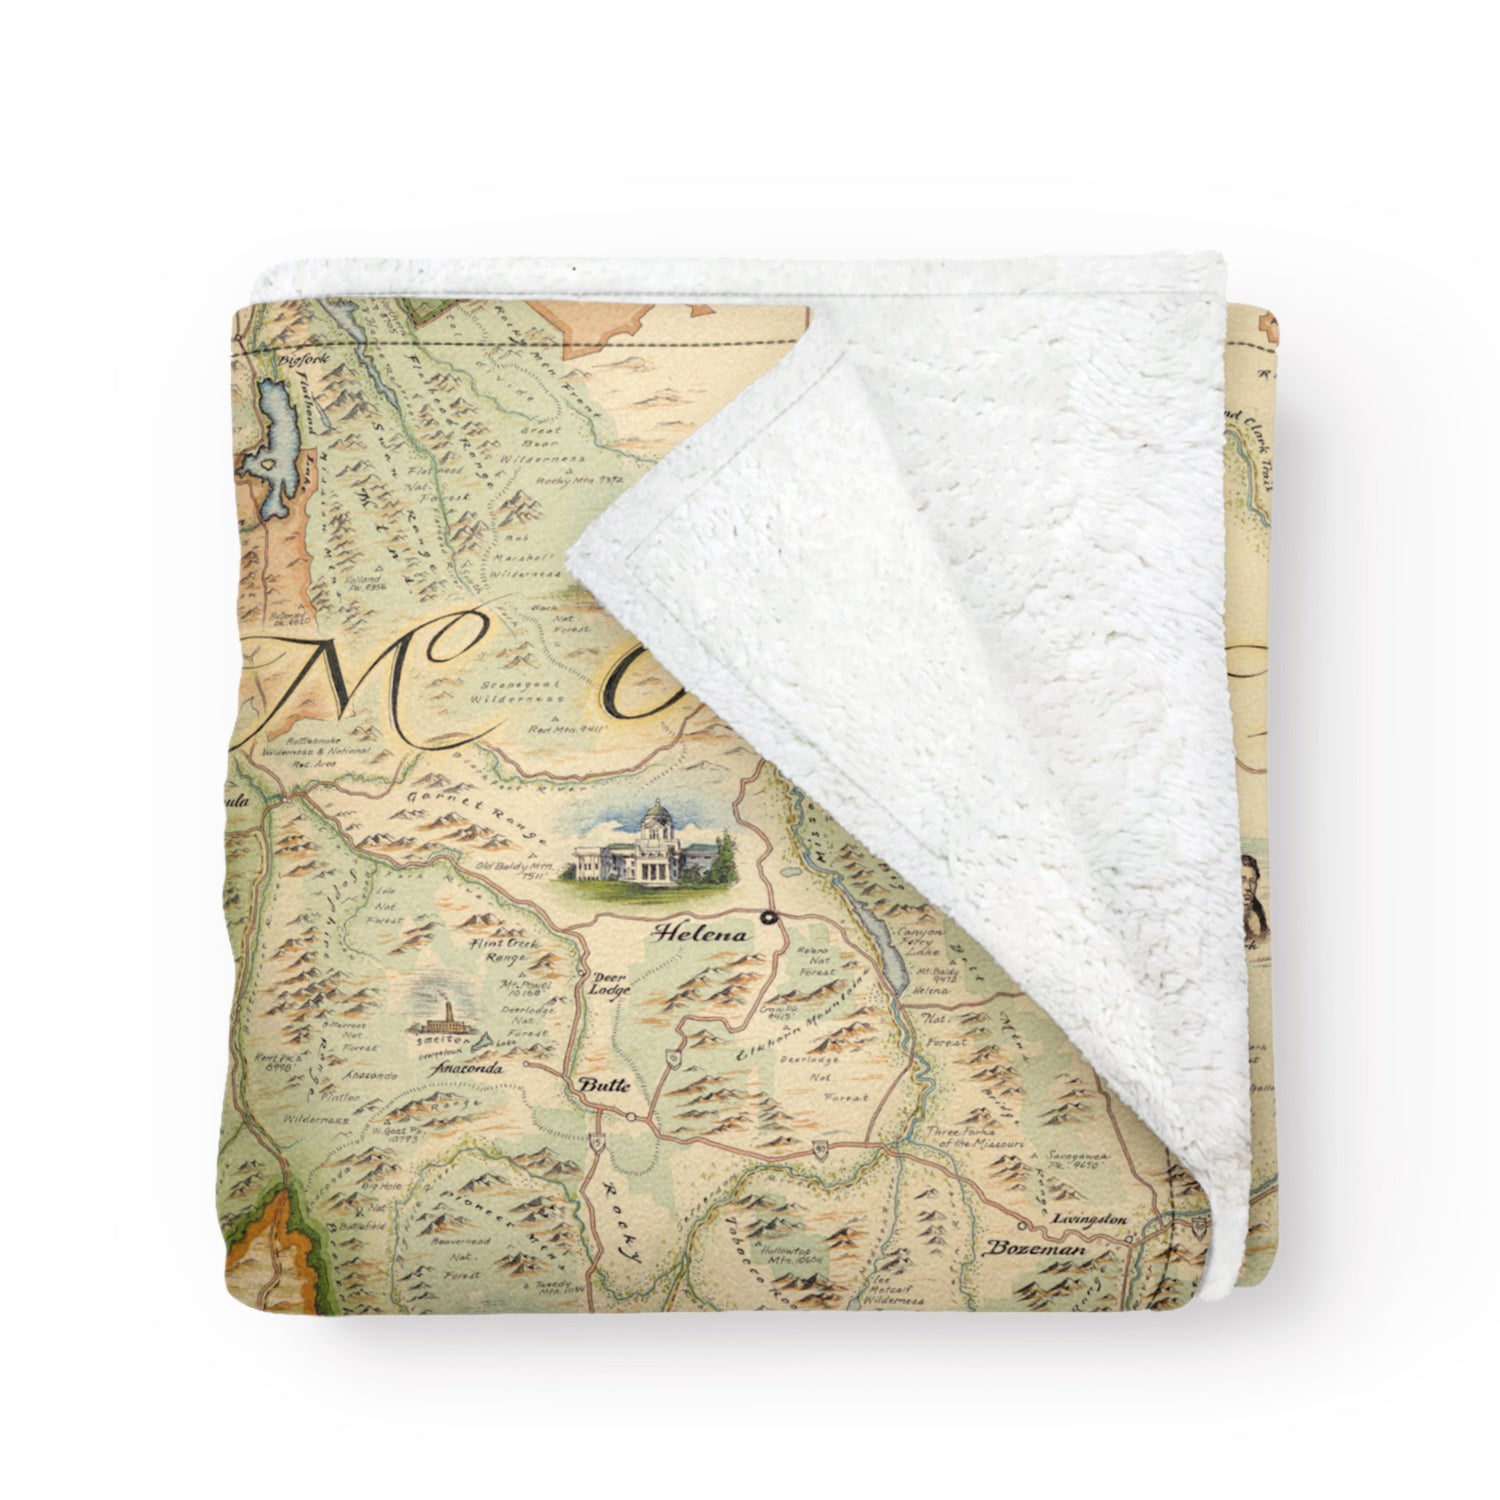 Folded fleece blanket with map of Montana on it. Blanket measures 58